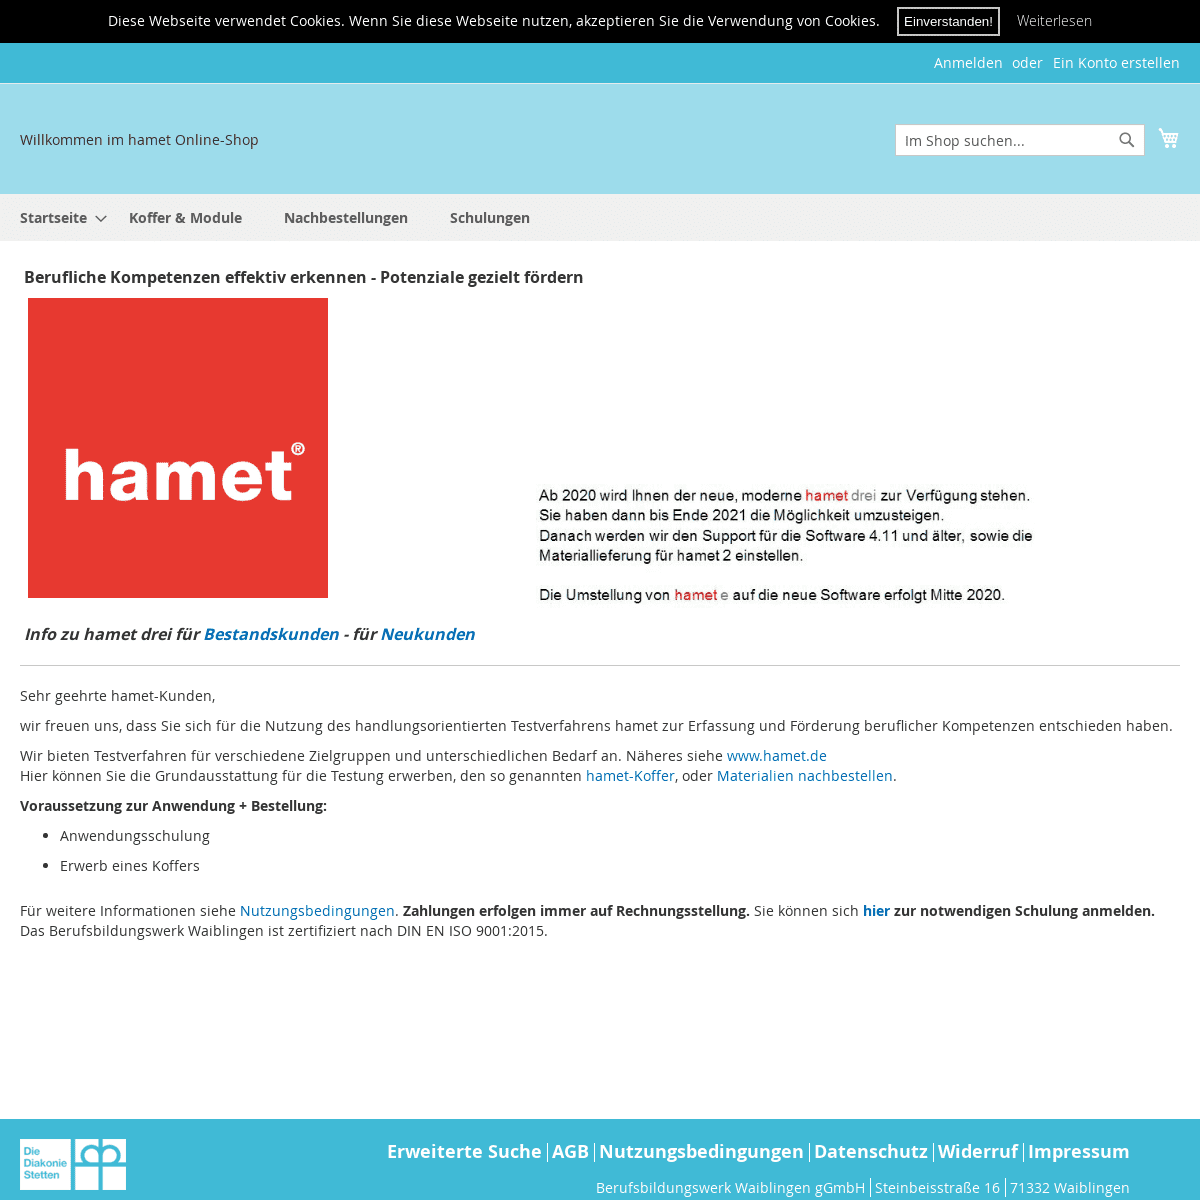 A complete backup of hamet.eu